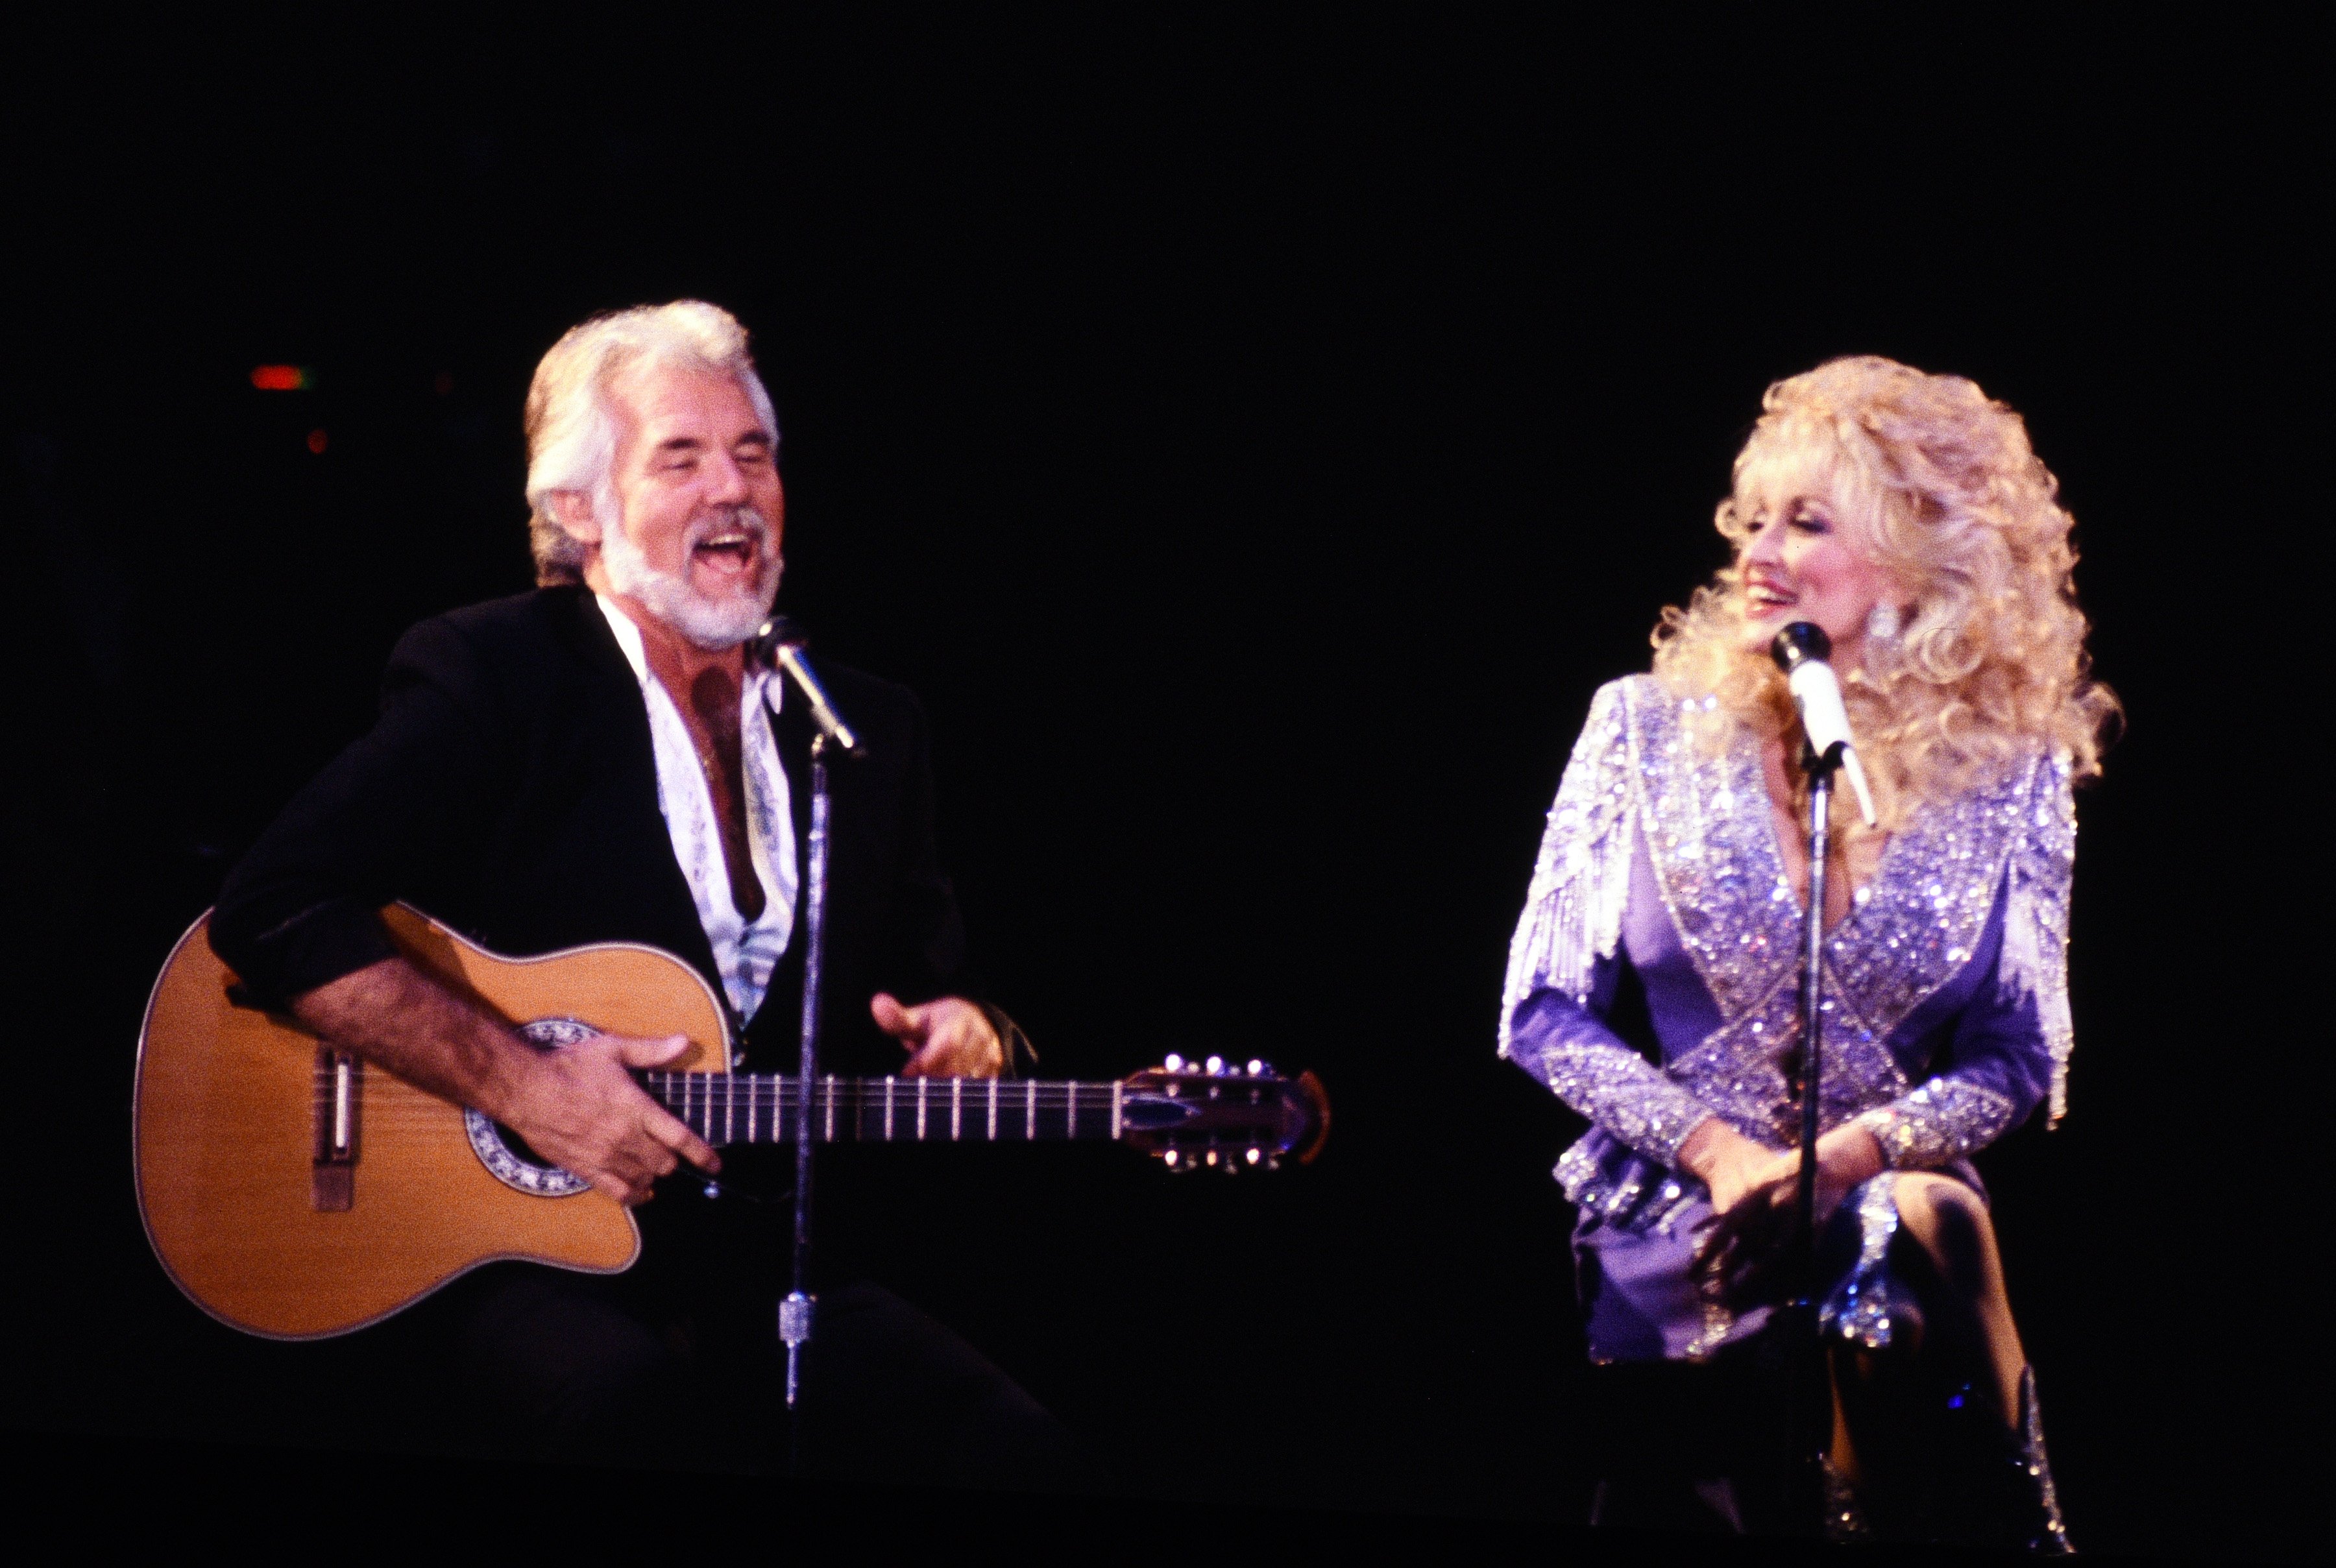  LOS ÁNGELES, CA - ENERO DE 1990: Kenny Rogers canta con Dolly Parton en un concierto en enero de 1990 en Los Ángeles, California. I Foto: Getty Images